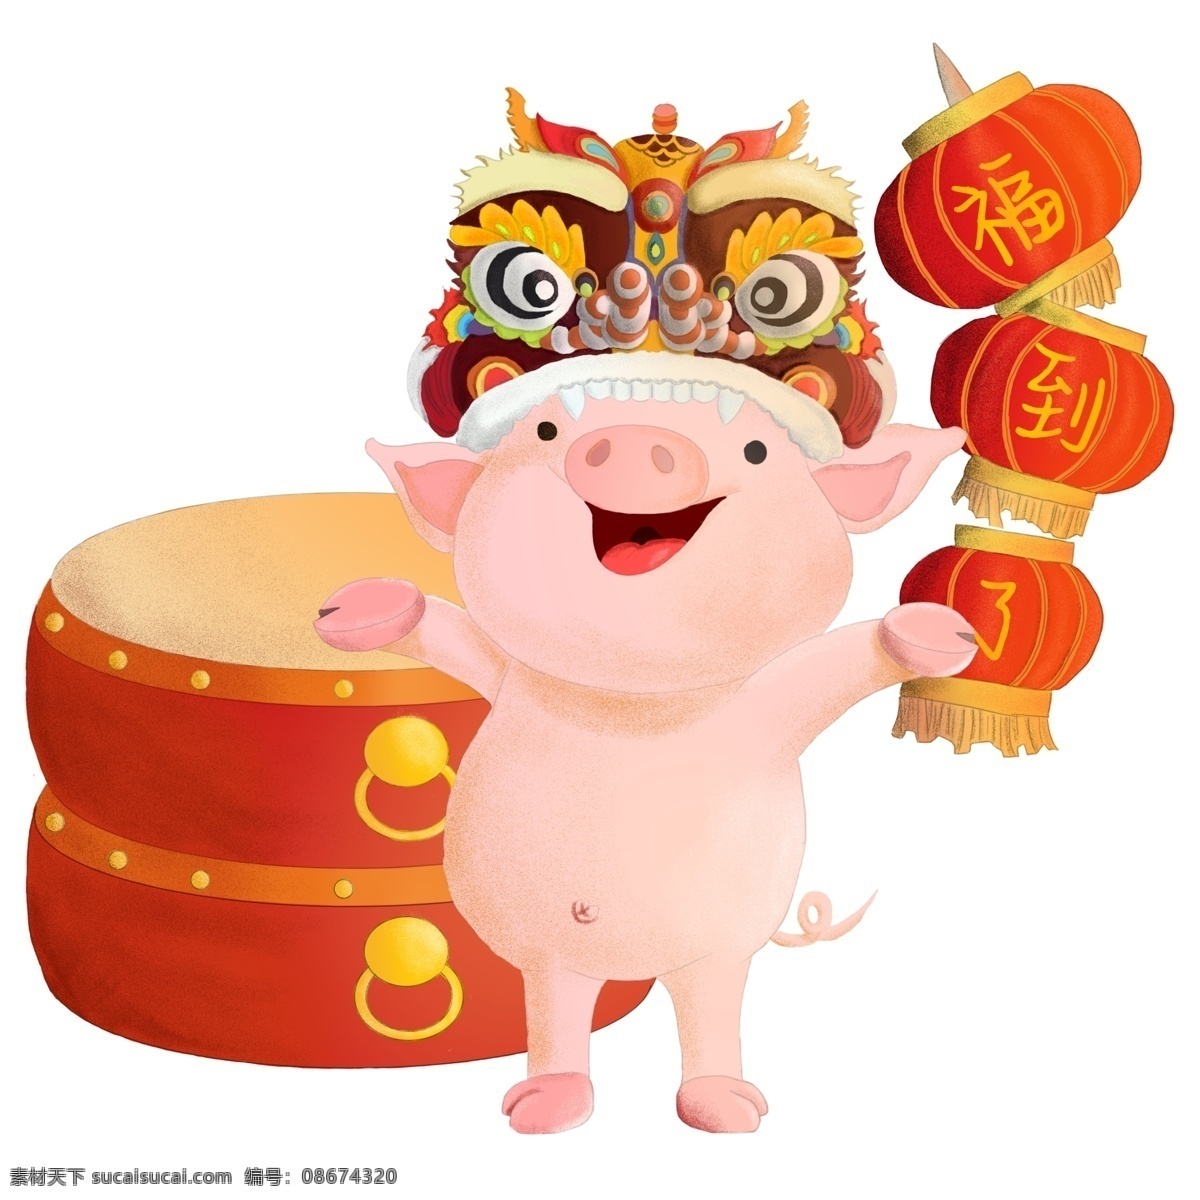 猪年 吉祥 舞狮 福 猪 卡通 手绘 免费 春节 鼓 灯笼 过年 新年快乐 喜庆 福到了 新年 新春 红色 节日